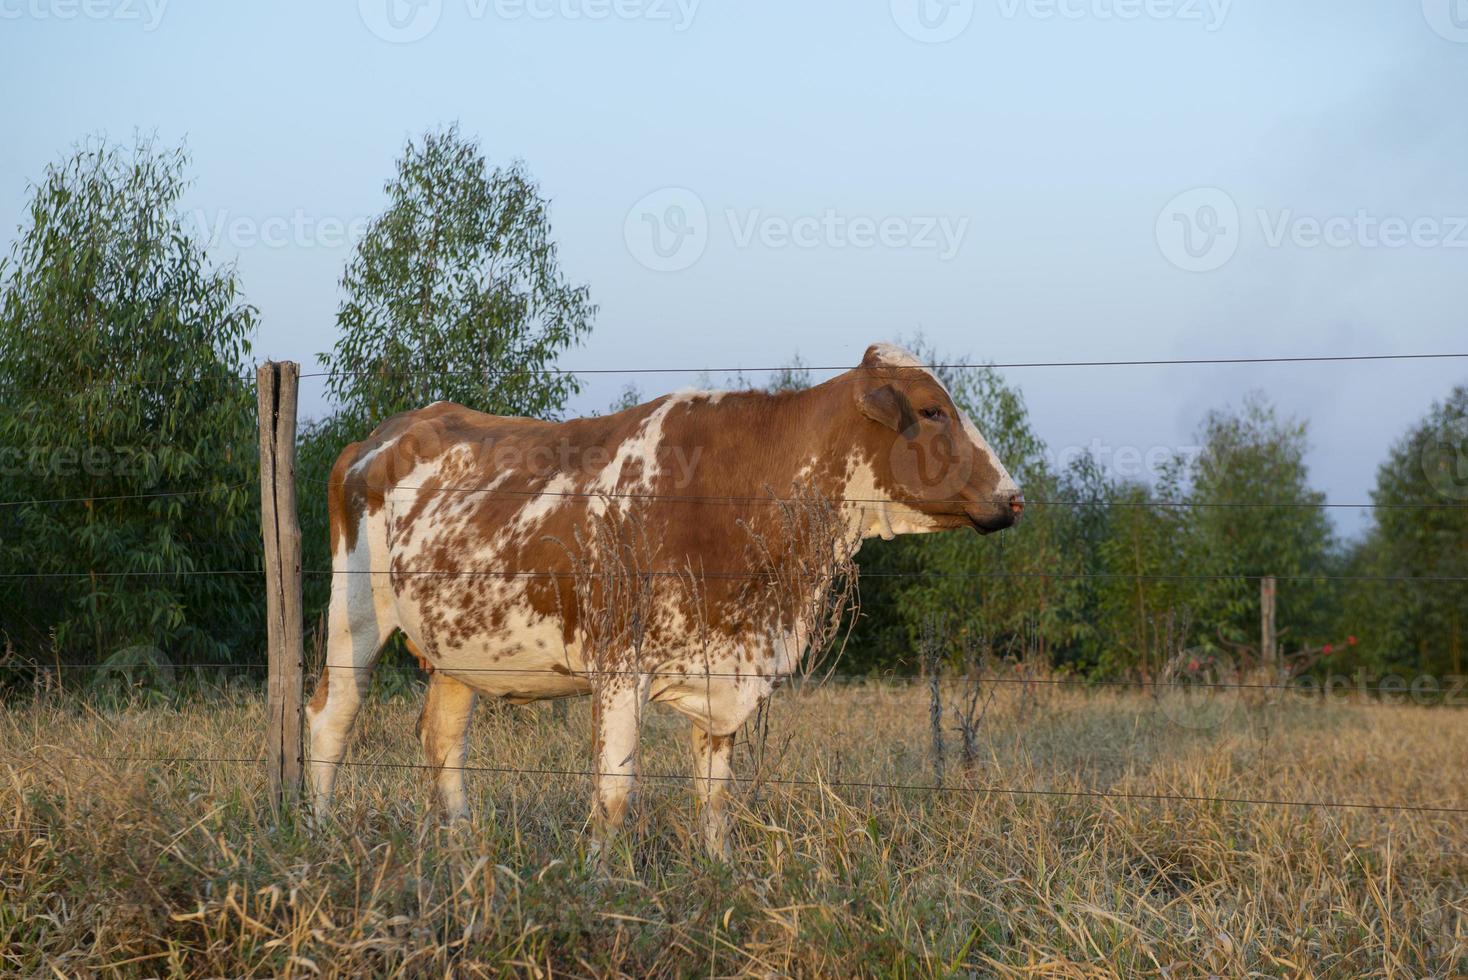 vue latérale d'une belle vache hollandaise tachetée de brun et de blanc photo